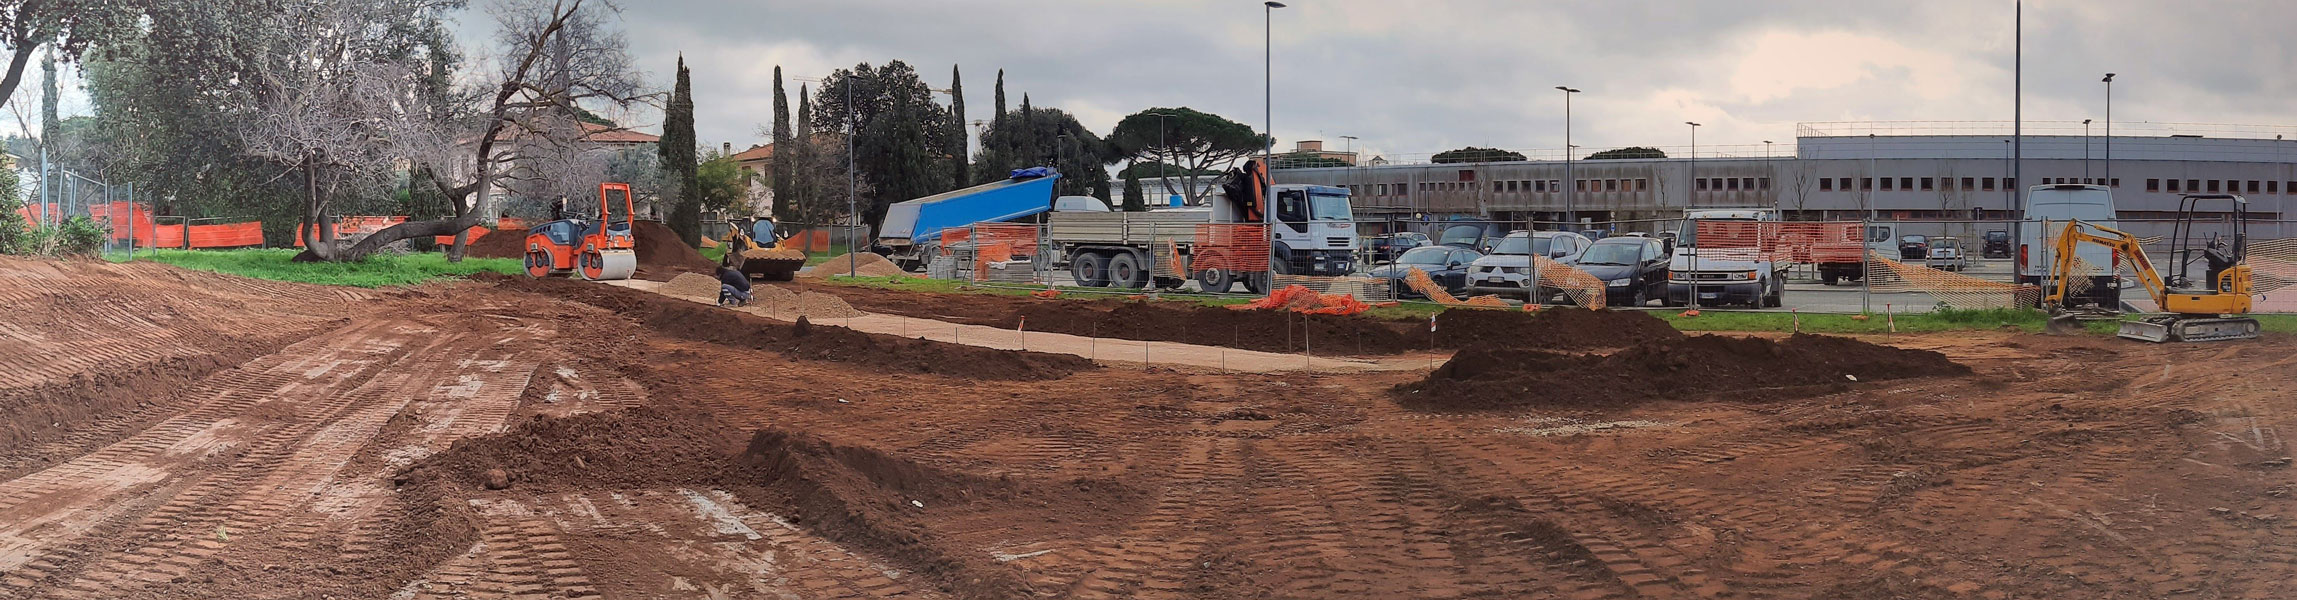 Escavazioni e Movimento Terra, Demolizioni - Vagelli srl dal 1995 Scavi e Movimento terra per fondamenta e fognature, Livorno